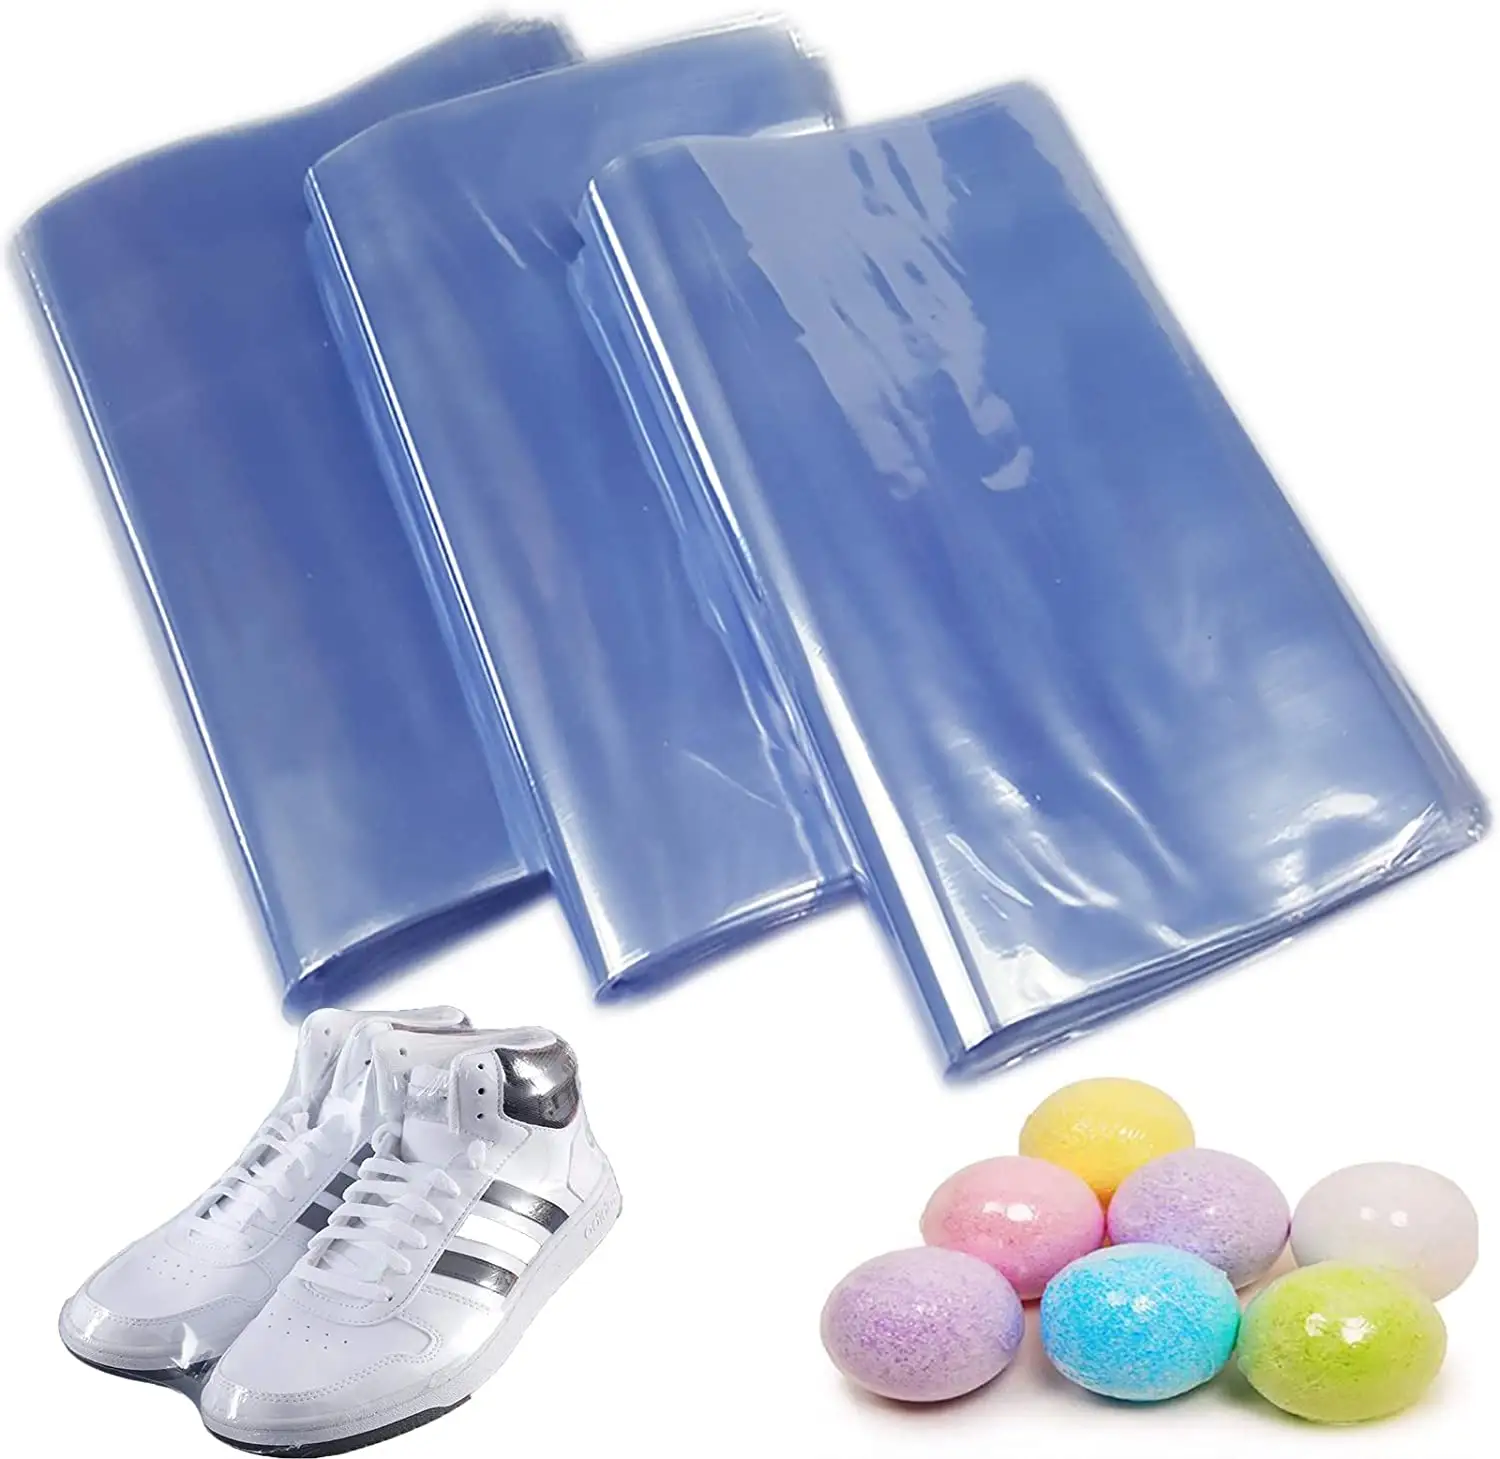 Stampa personalizzata impermeabile trasparente termoretraibile sapone cestini regalo sacchetti dell'involucro sacchetto di imballaggio stampato a colori per l'imballaggio